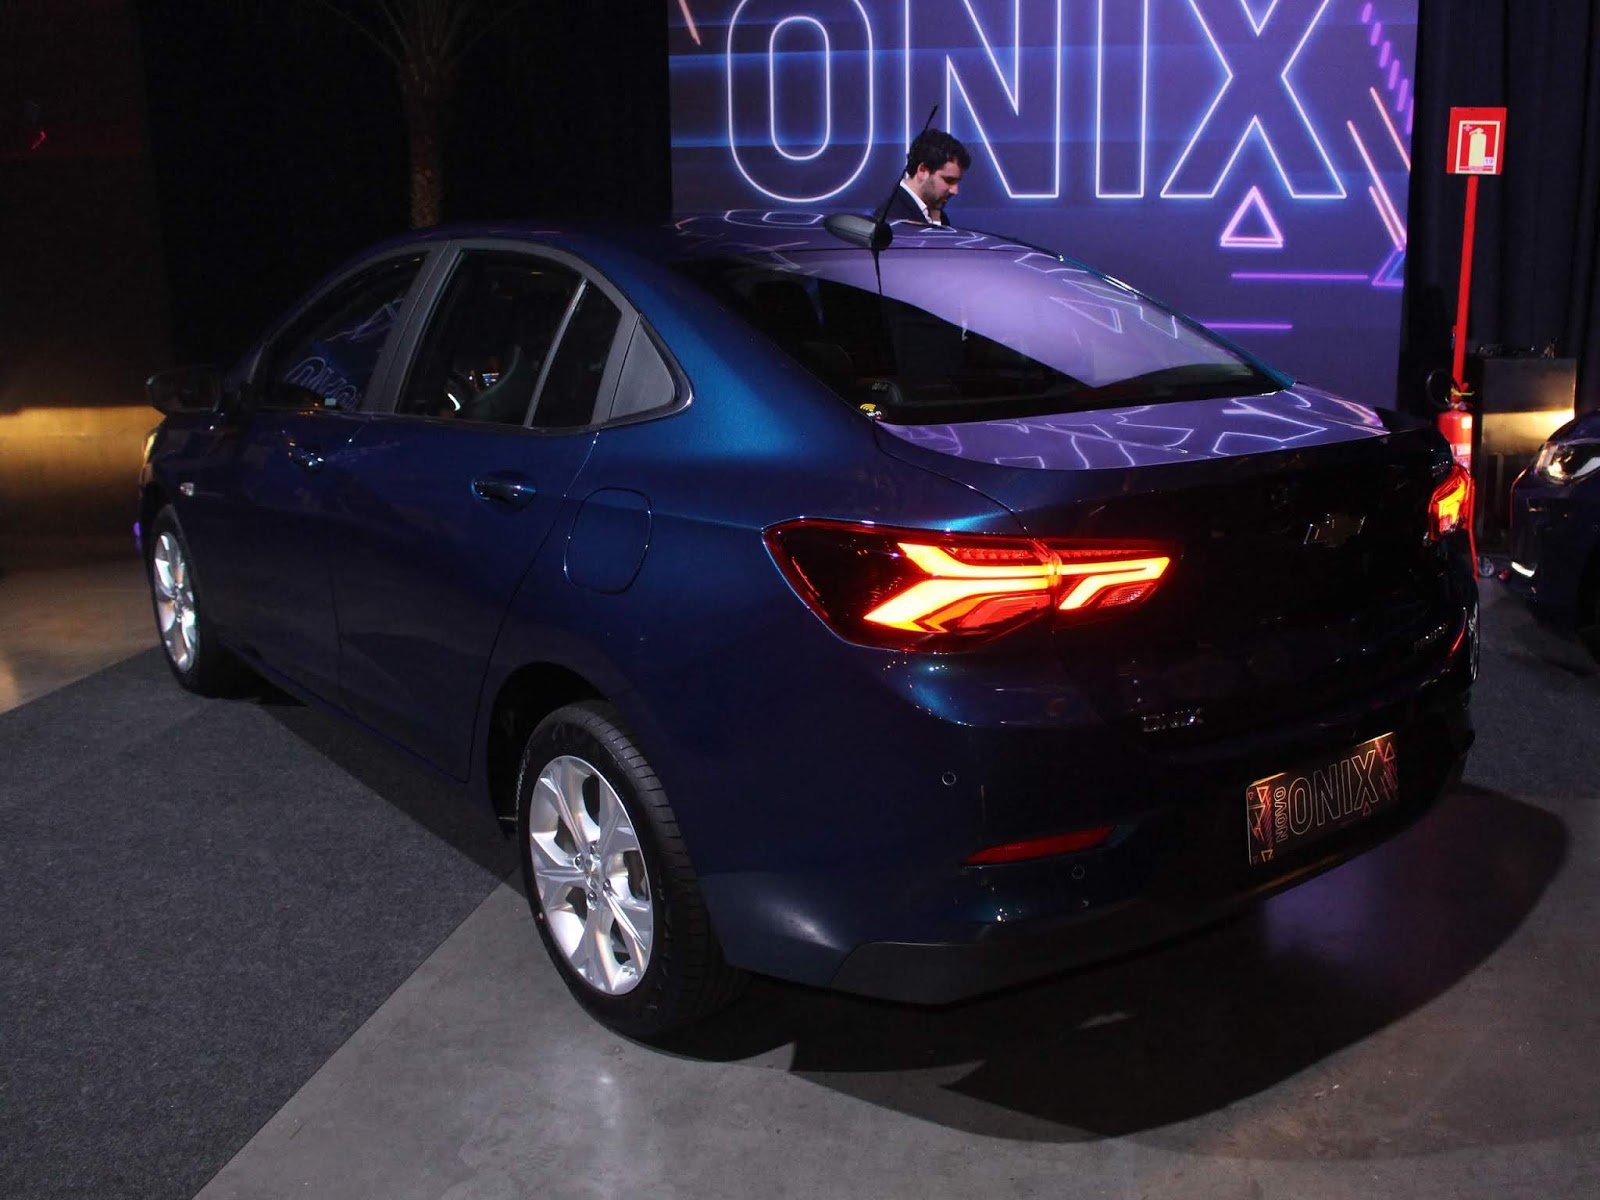 Longa Duração: central do Chevrolet Onix Plus ofusca o motorista à noite